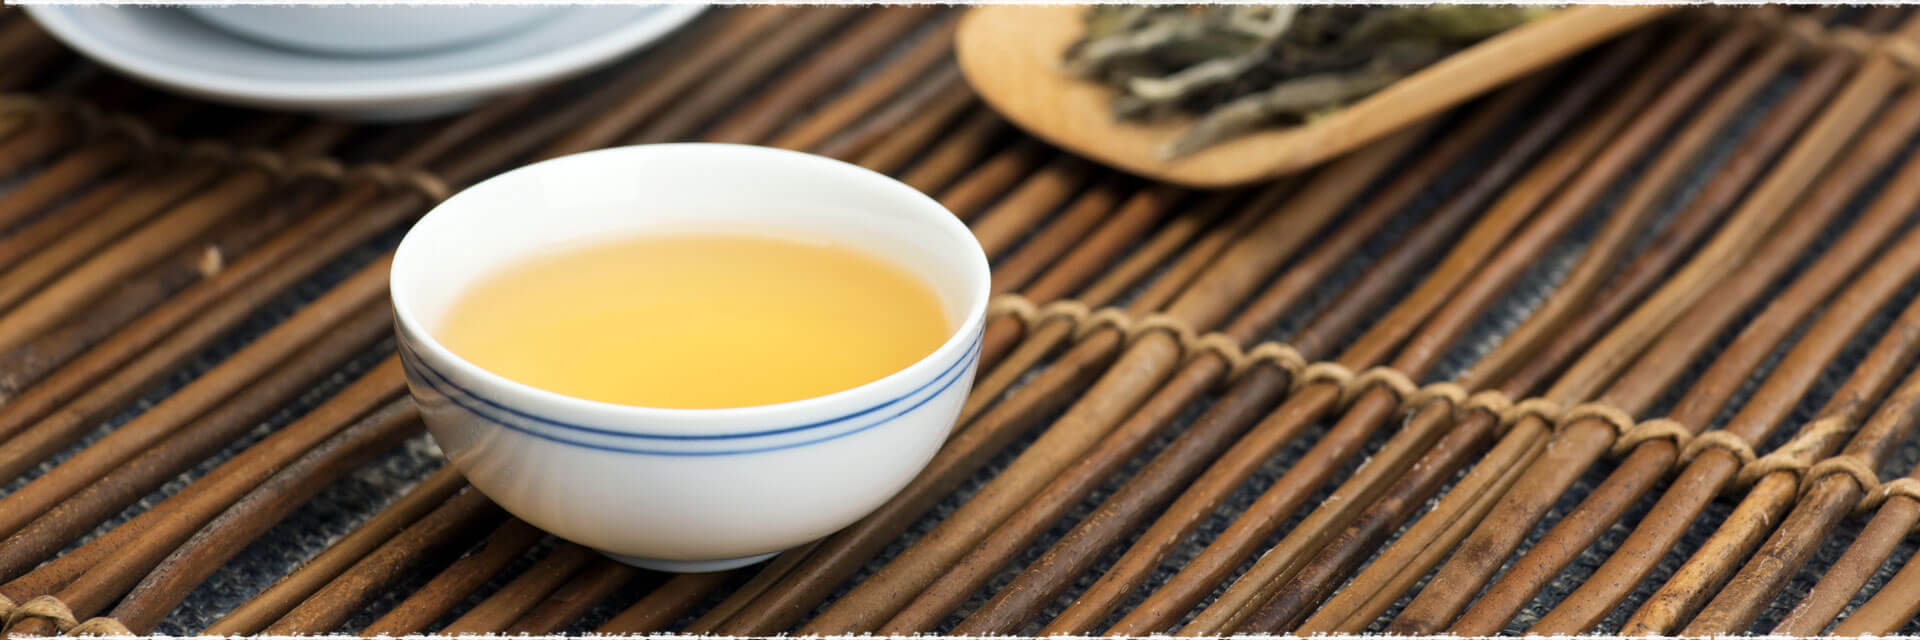 About White Peony (Bai Mu Dan) White Tea